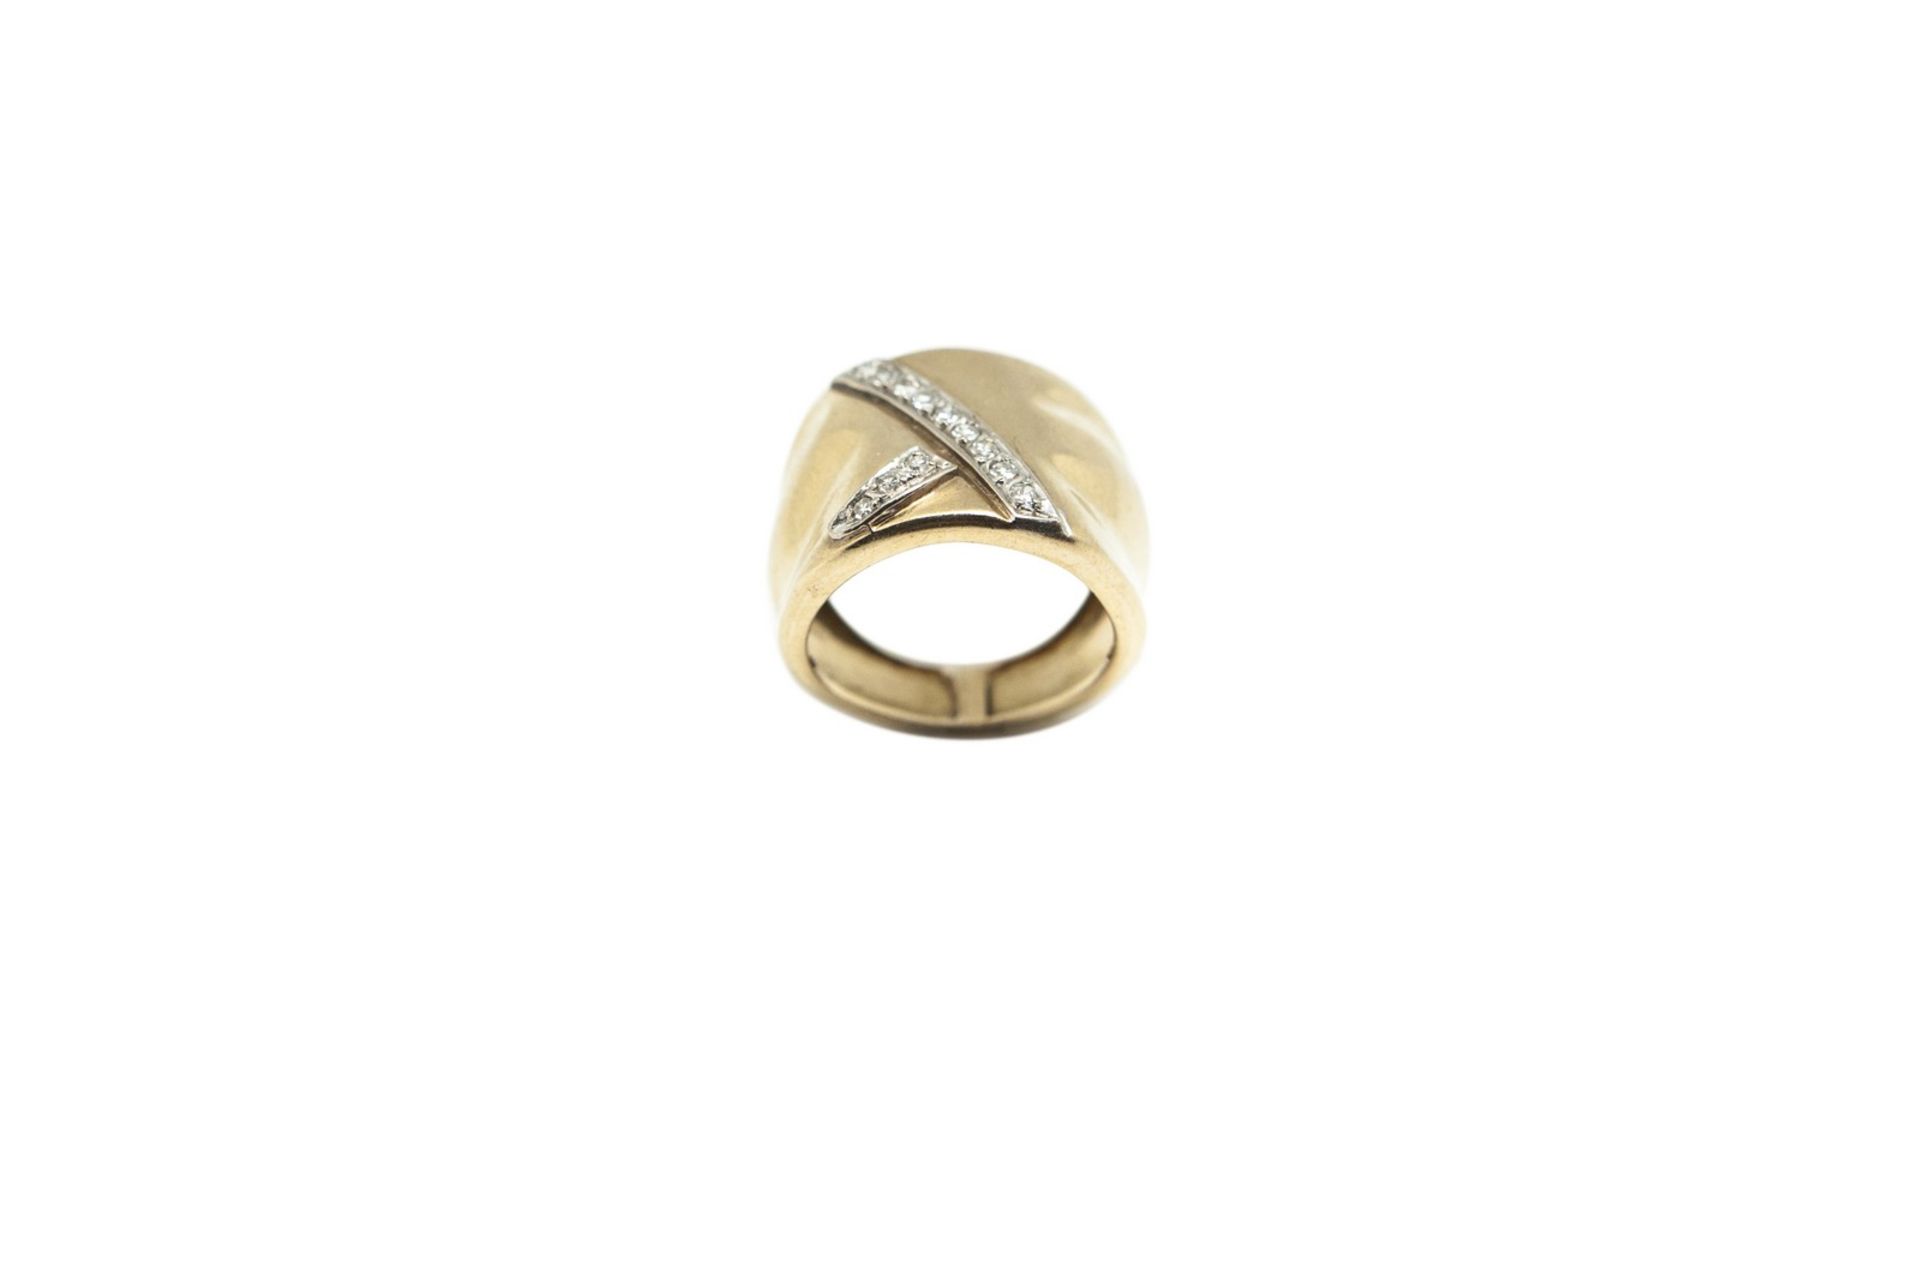 RING Montura en oro amarillo y diamantes talla brillante, 7,2 gr. Starting Price: €480